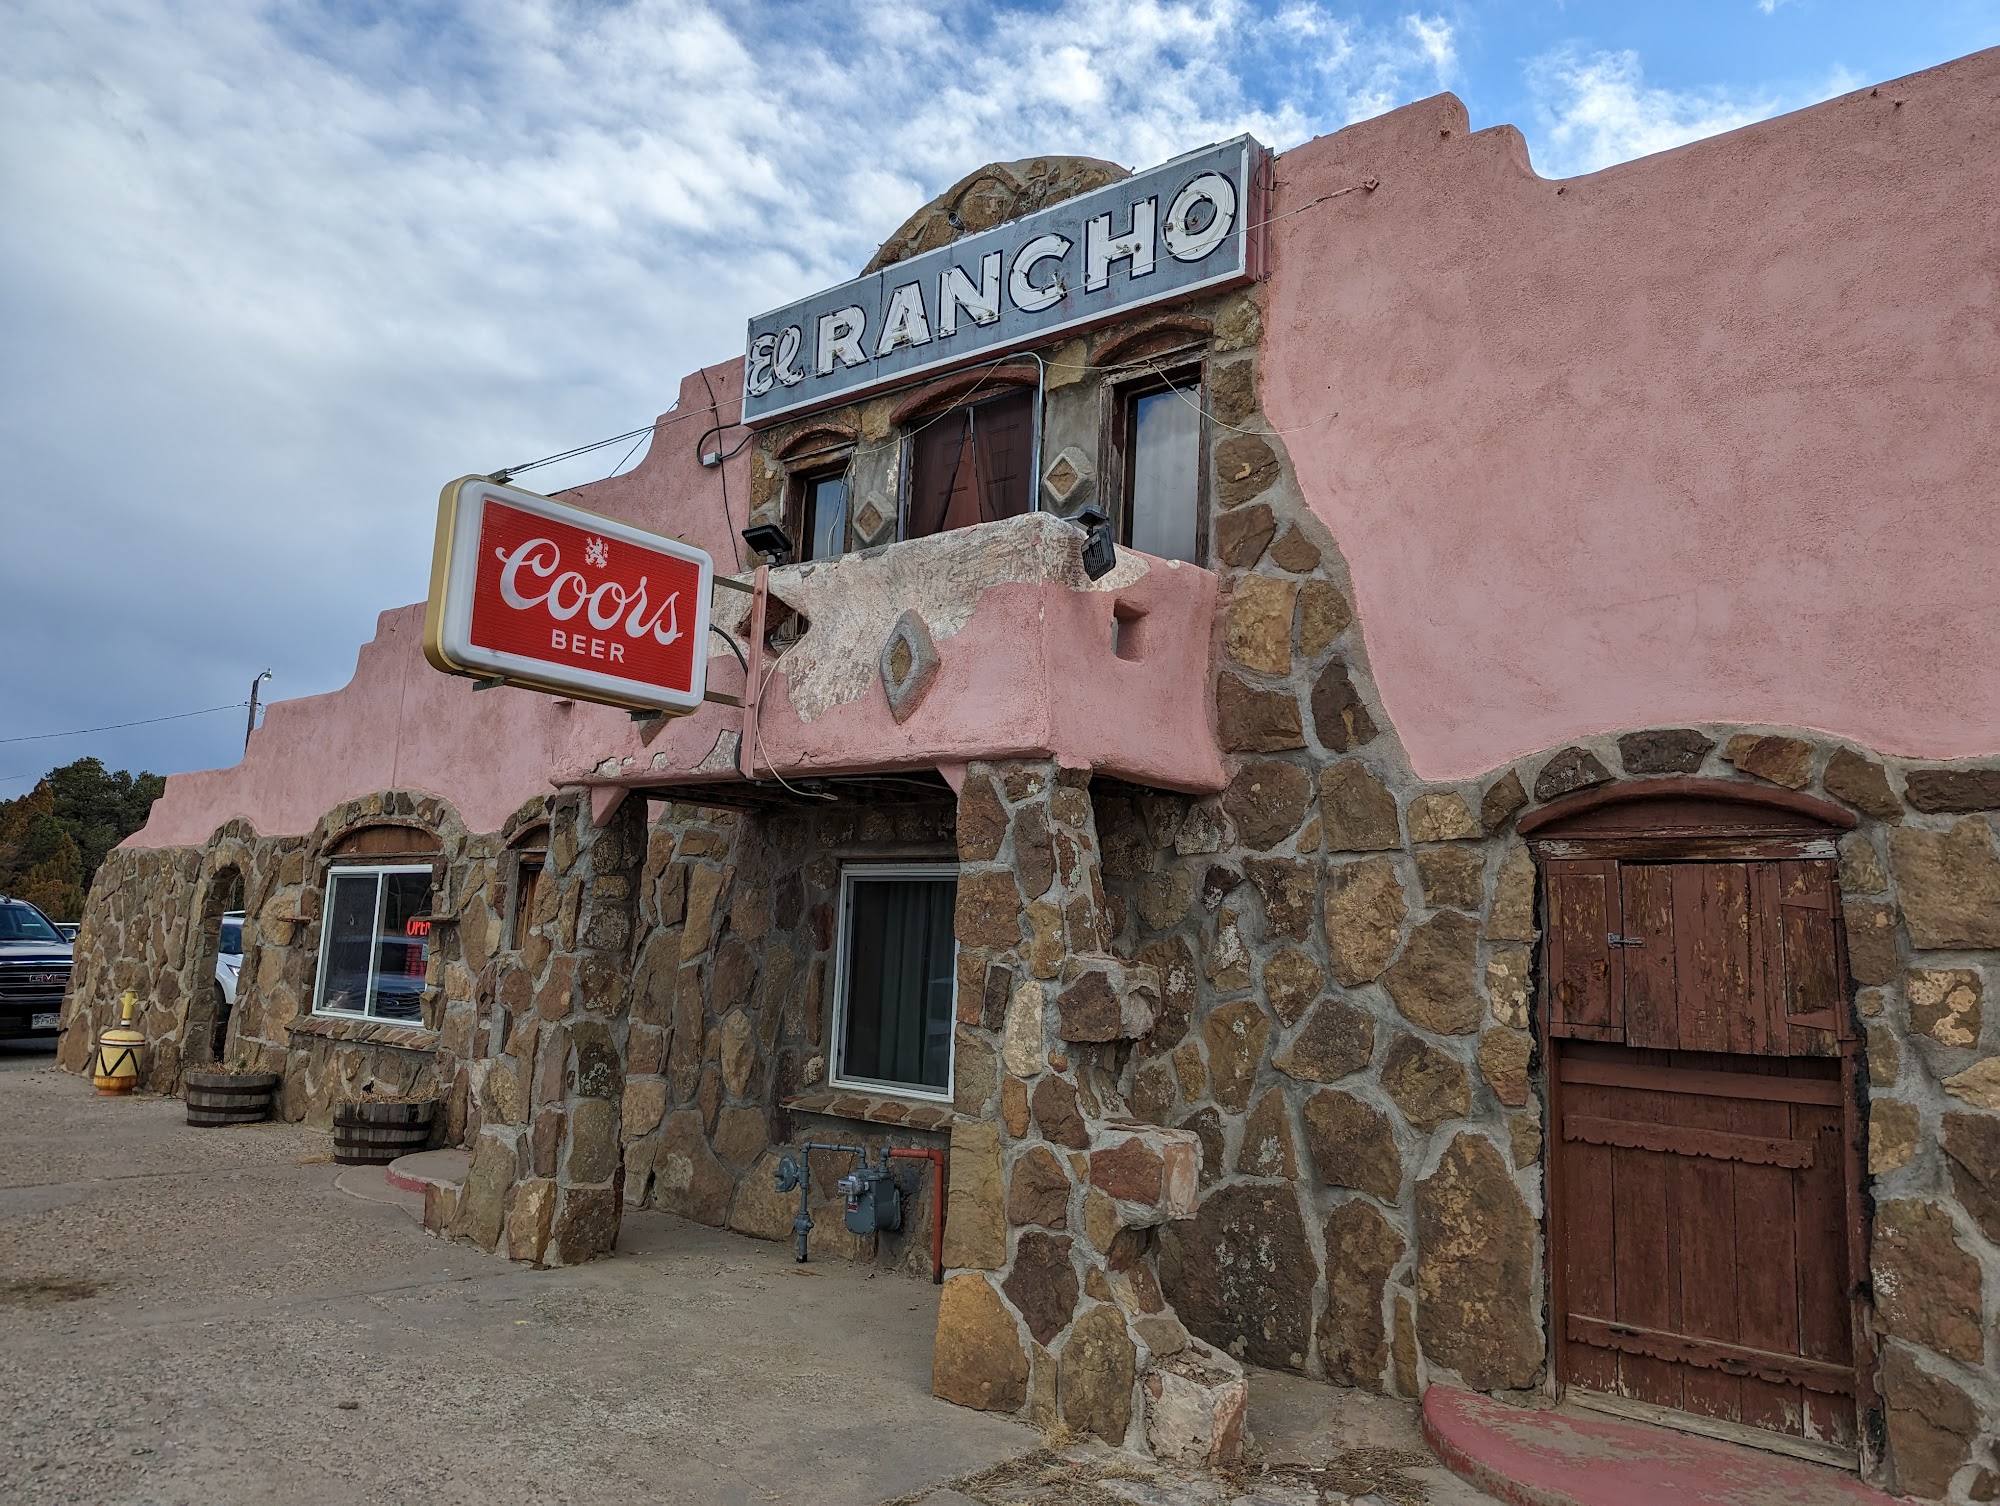 El Rancho Restaurant & Bar